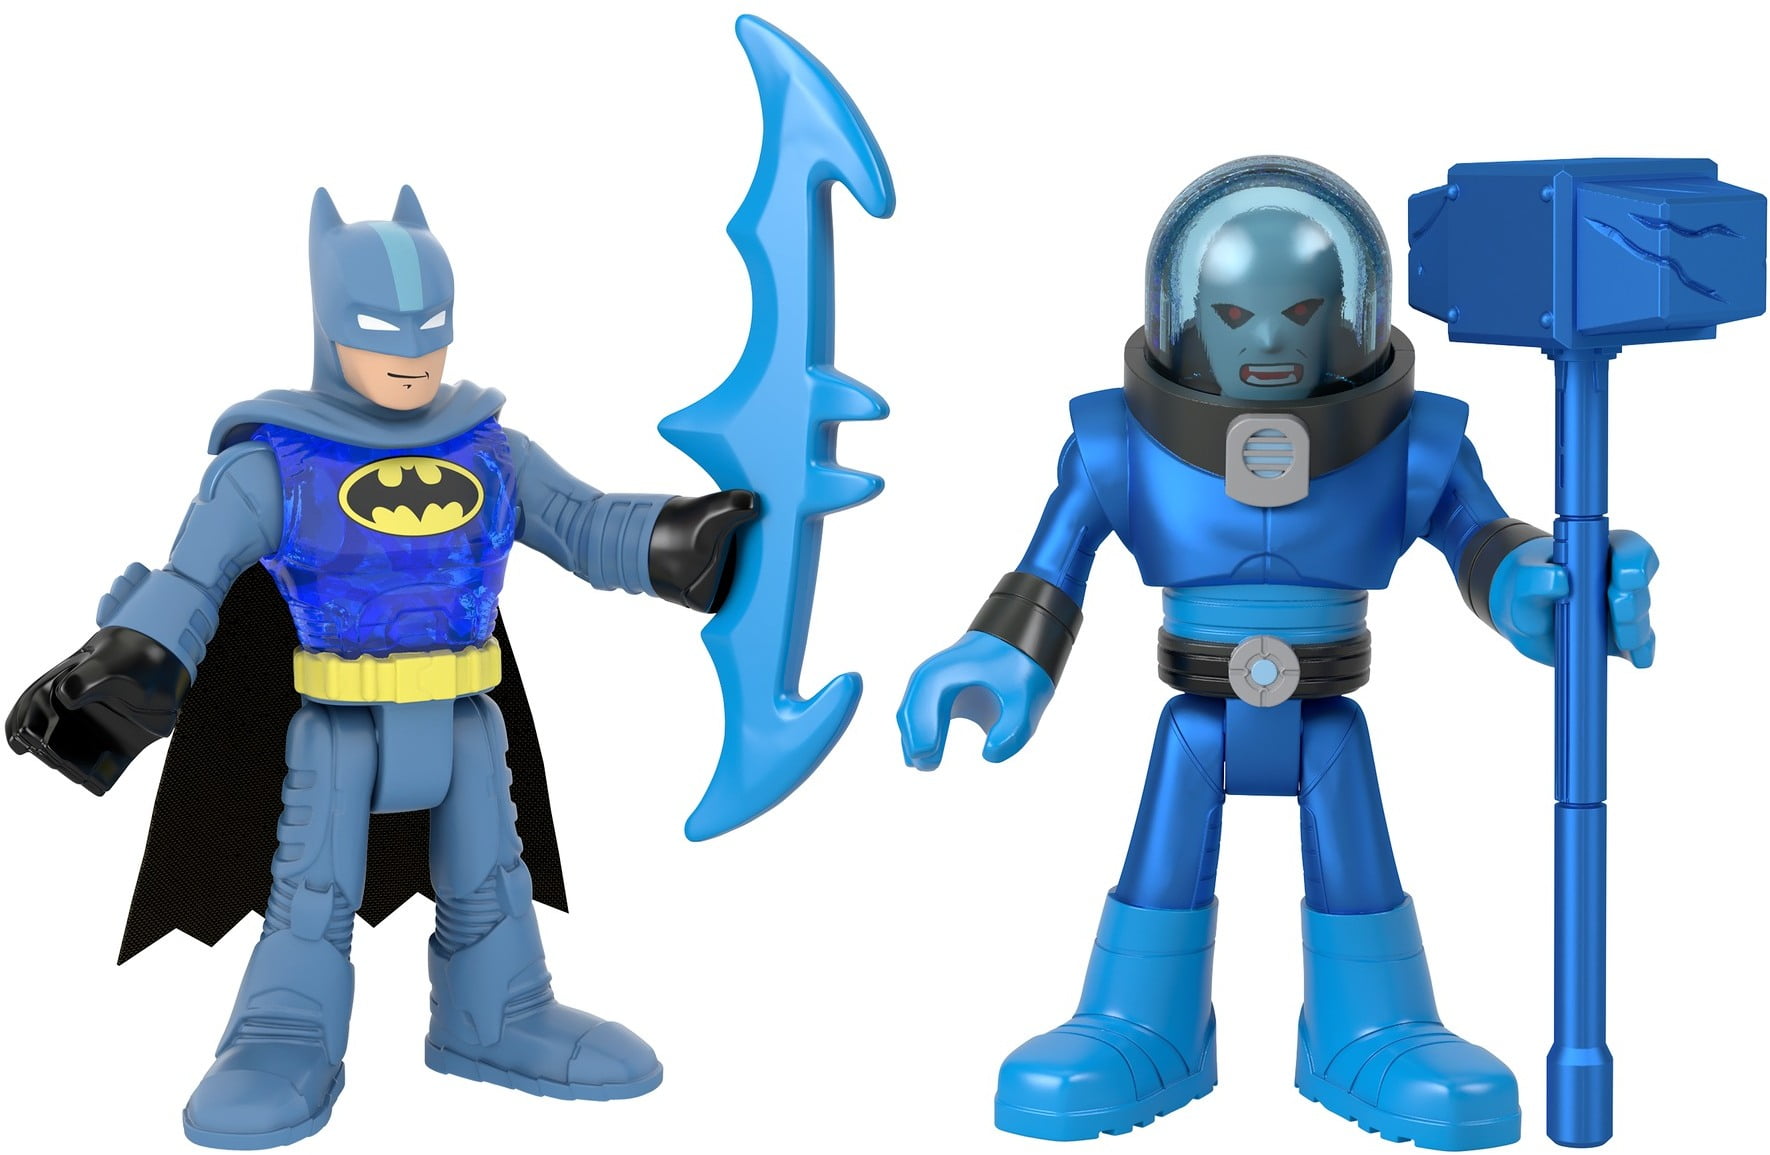 Lot 2PCS Fisher Price Imaginext DC Super Friends Batman & Penguin Figure Boy Toy 